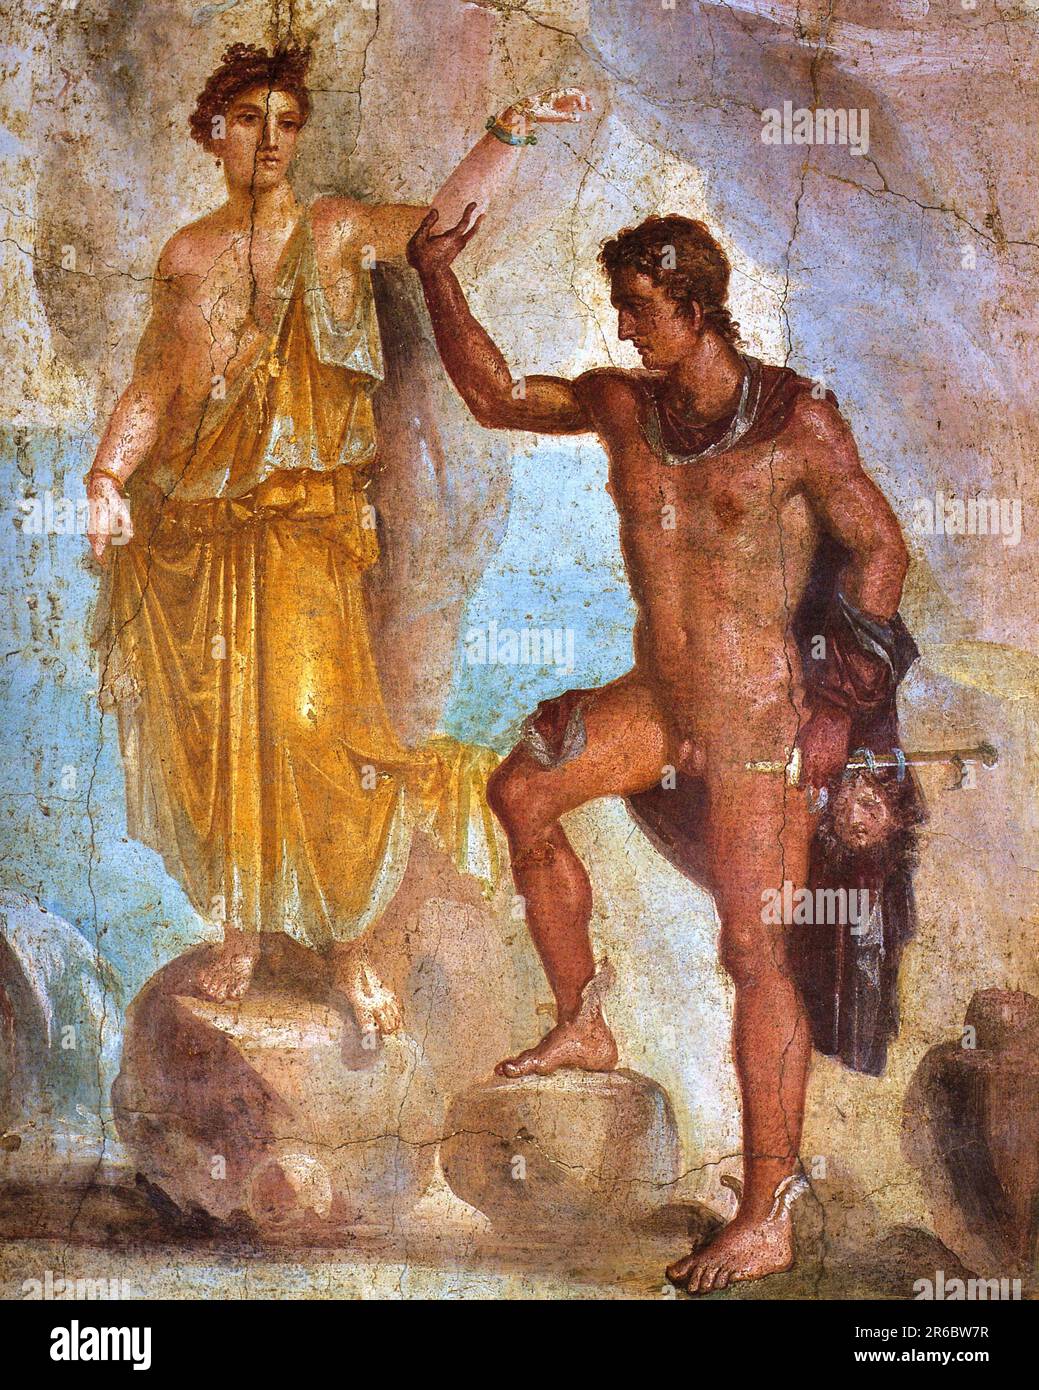 Wandgemälde von Pompeji aus der Casa dei Dioscuri, die Perseus und Andromeda Andromeda in der griechischen Mythologie darstellt, die Frau von Perseus und die Tochter des äthiopischen Königs Cepheus. Um für die Selbstüberschätzung ihrer Mutter zu büßen, wird Andromeda als Menschenopfer für ein Seeungeheuer von Poseidon angeboten und an einen Felsen gekettet, Und befreit von Perseus, historische, digital restaurierte Reproduktion aus einem Original aus dem 19. Jahrhundert / Wandmalerei aus Pompeji aus der Casa dei Dioscuri mit einer Darstellung von Perseus und Andromeda, Andromeda, in der griechischen Mythologie die Gattin des Perseus und die to Stockfoto